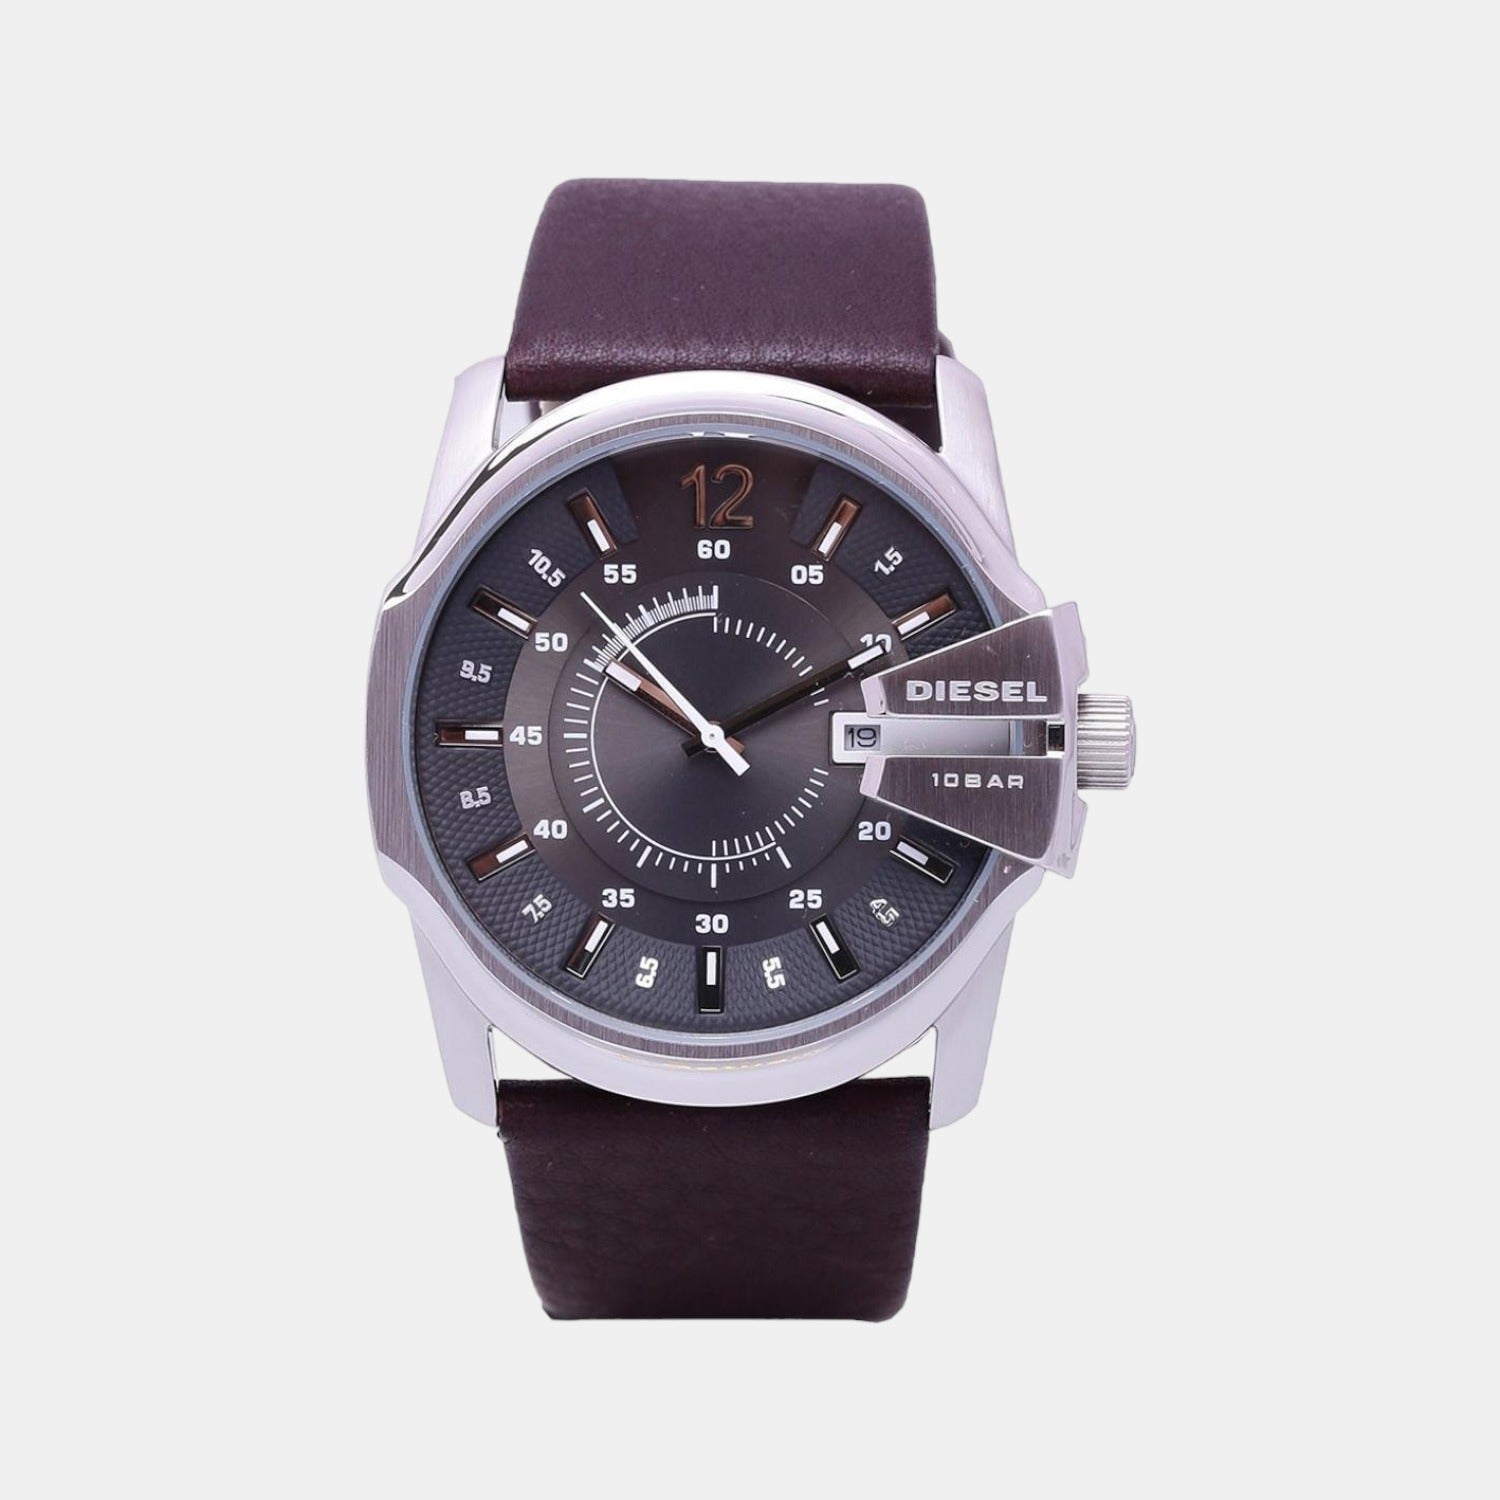 Men's watch | Watches for men, Diesel watches for men, Diesel watch